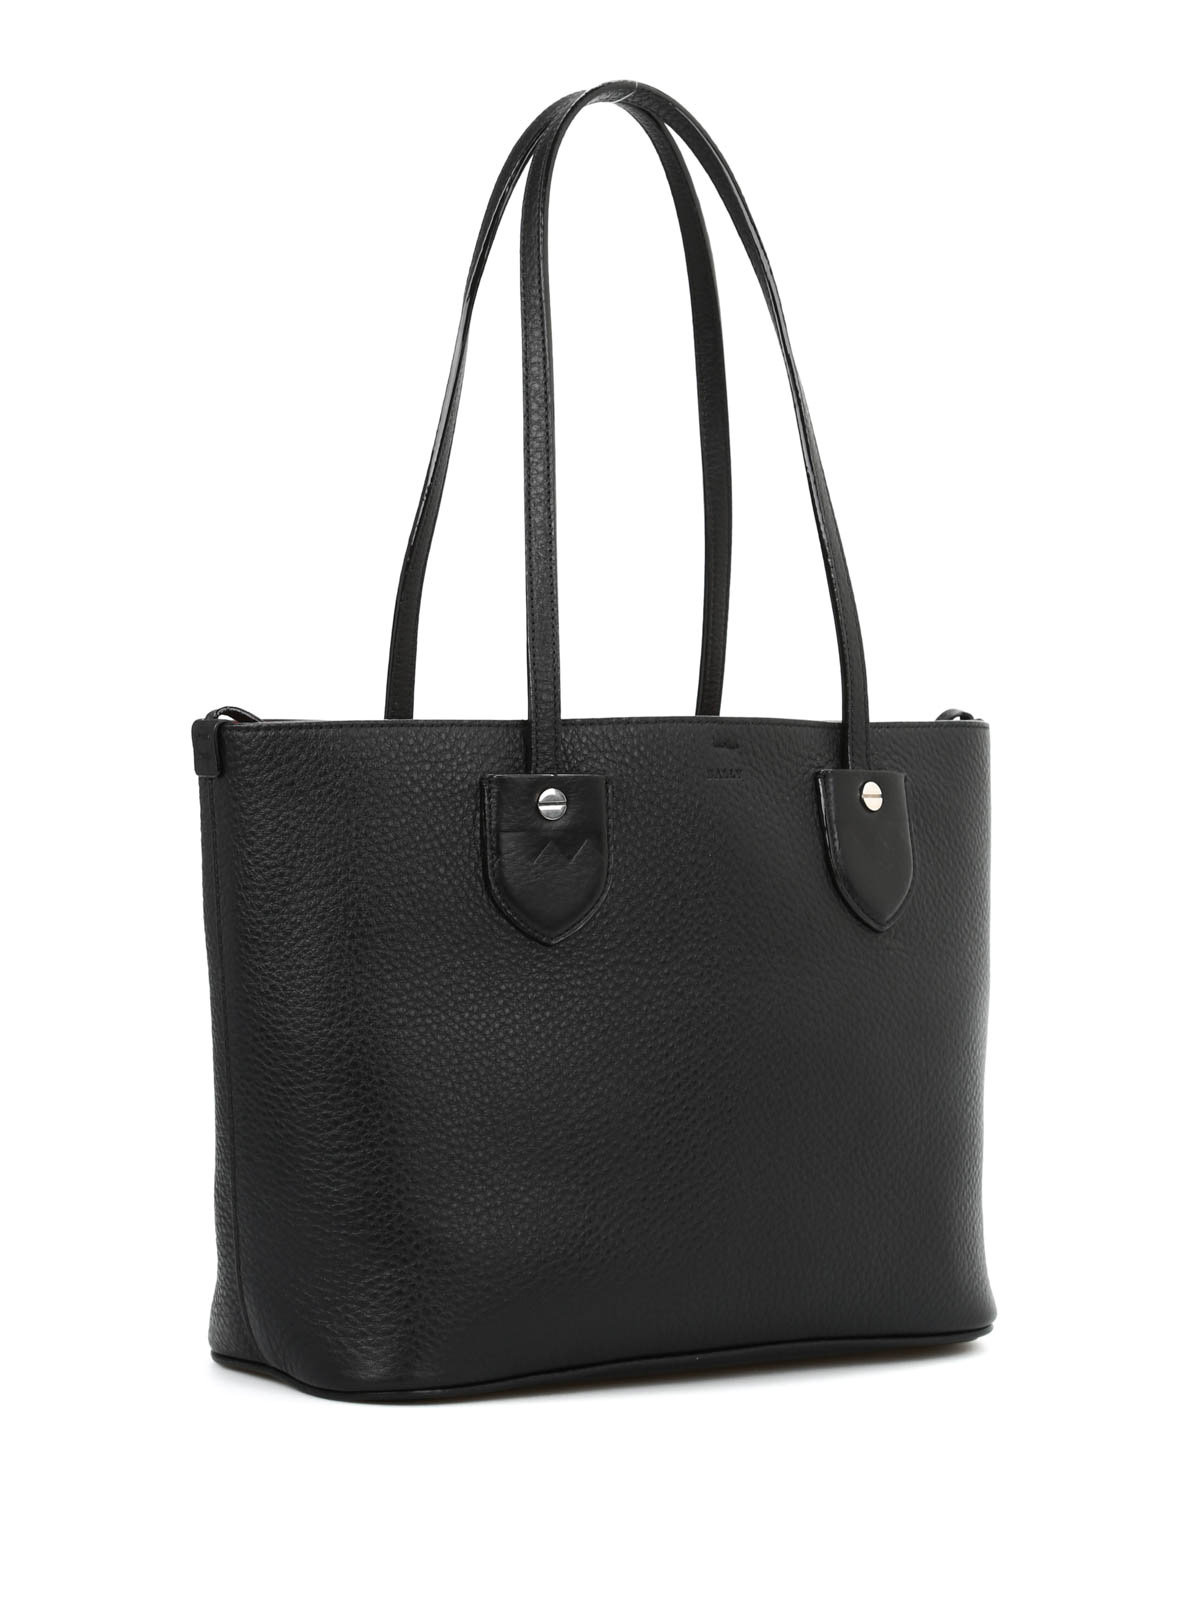 Totes bags Bally - Bernina Small tote - 6203910 | Shop online at iKRIX